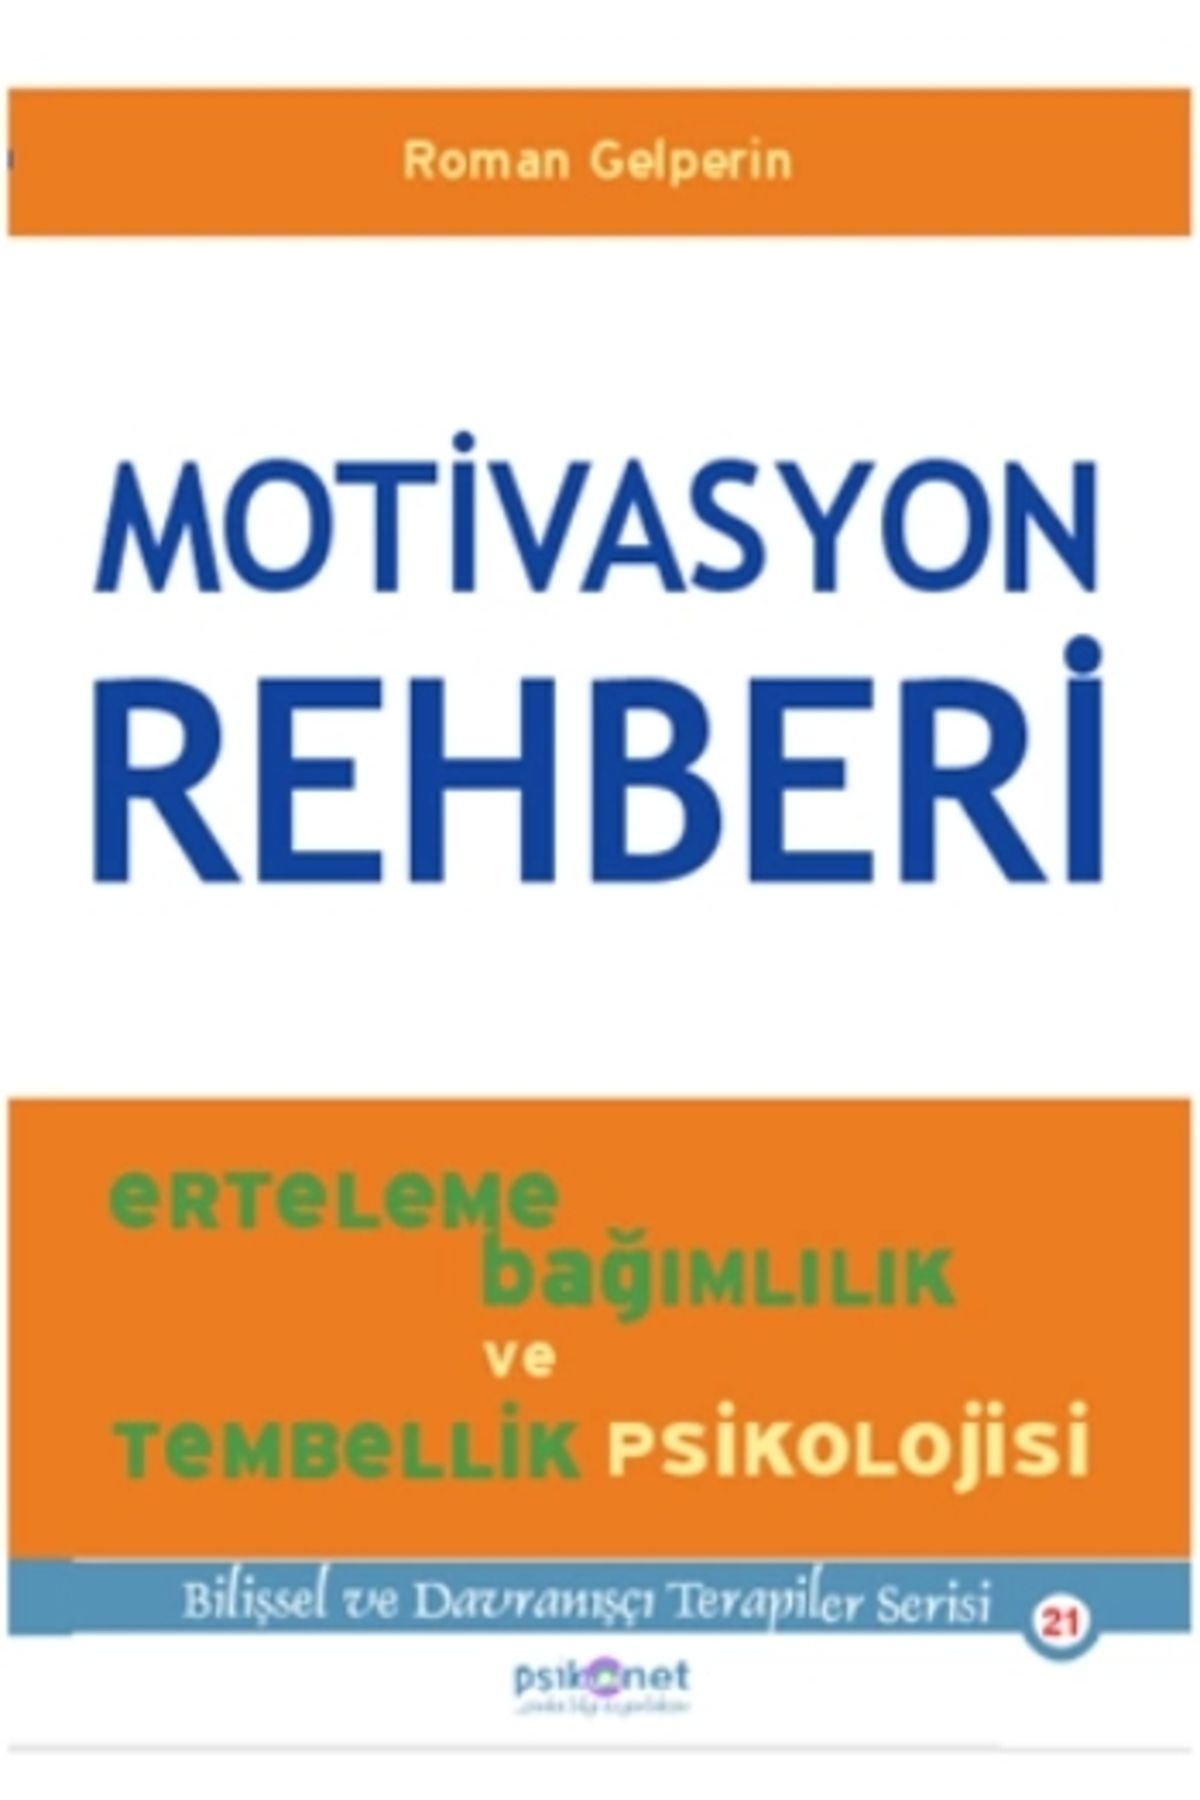 Psikonet Yayınları Motivasyon Rehberi & Erteleme, Bağımlılık Ve Tembellik Psikolojisi